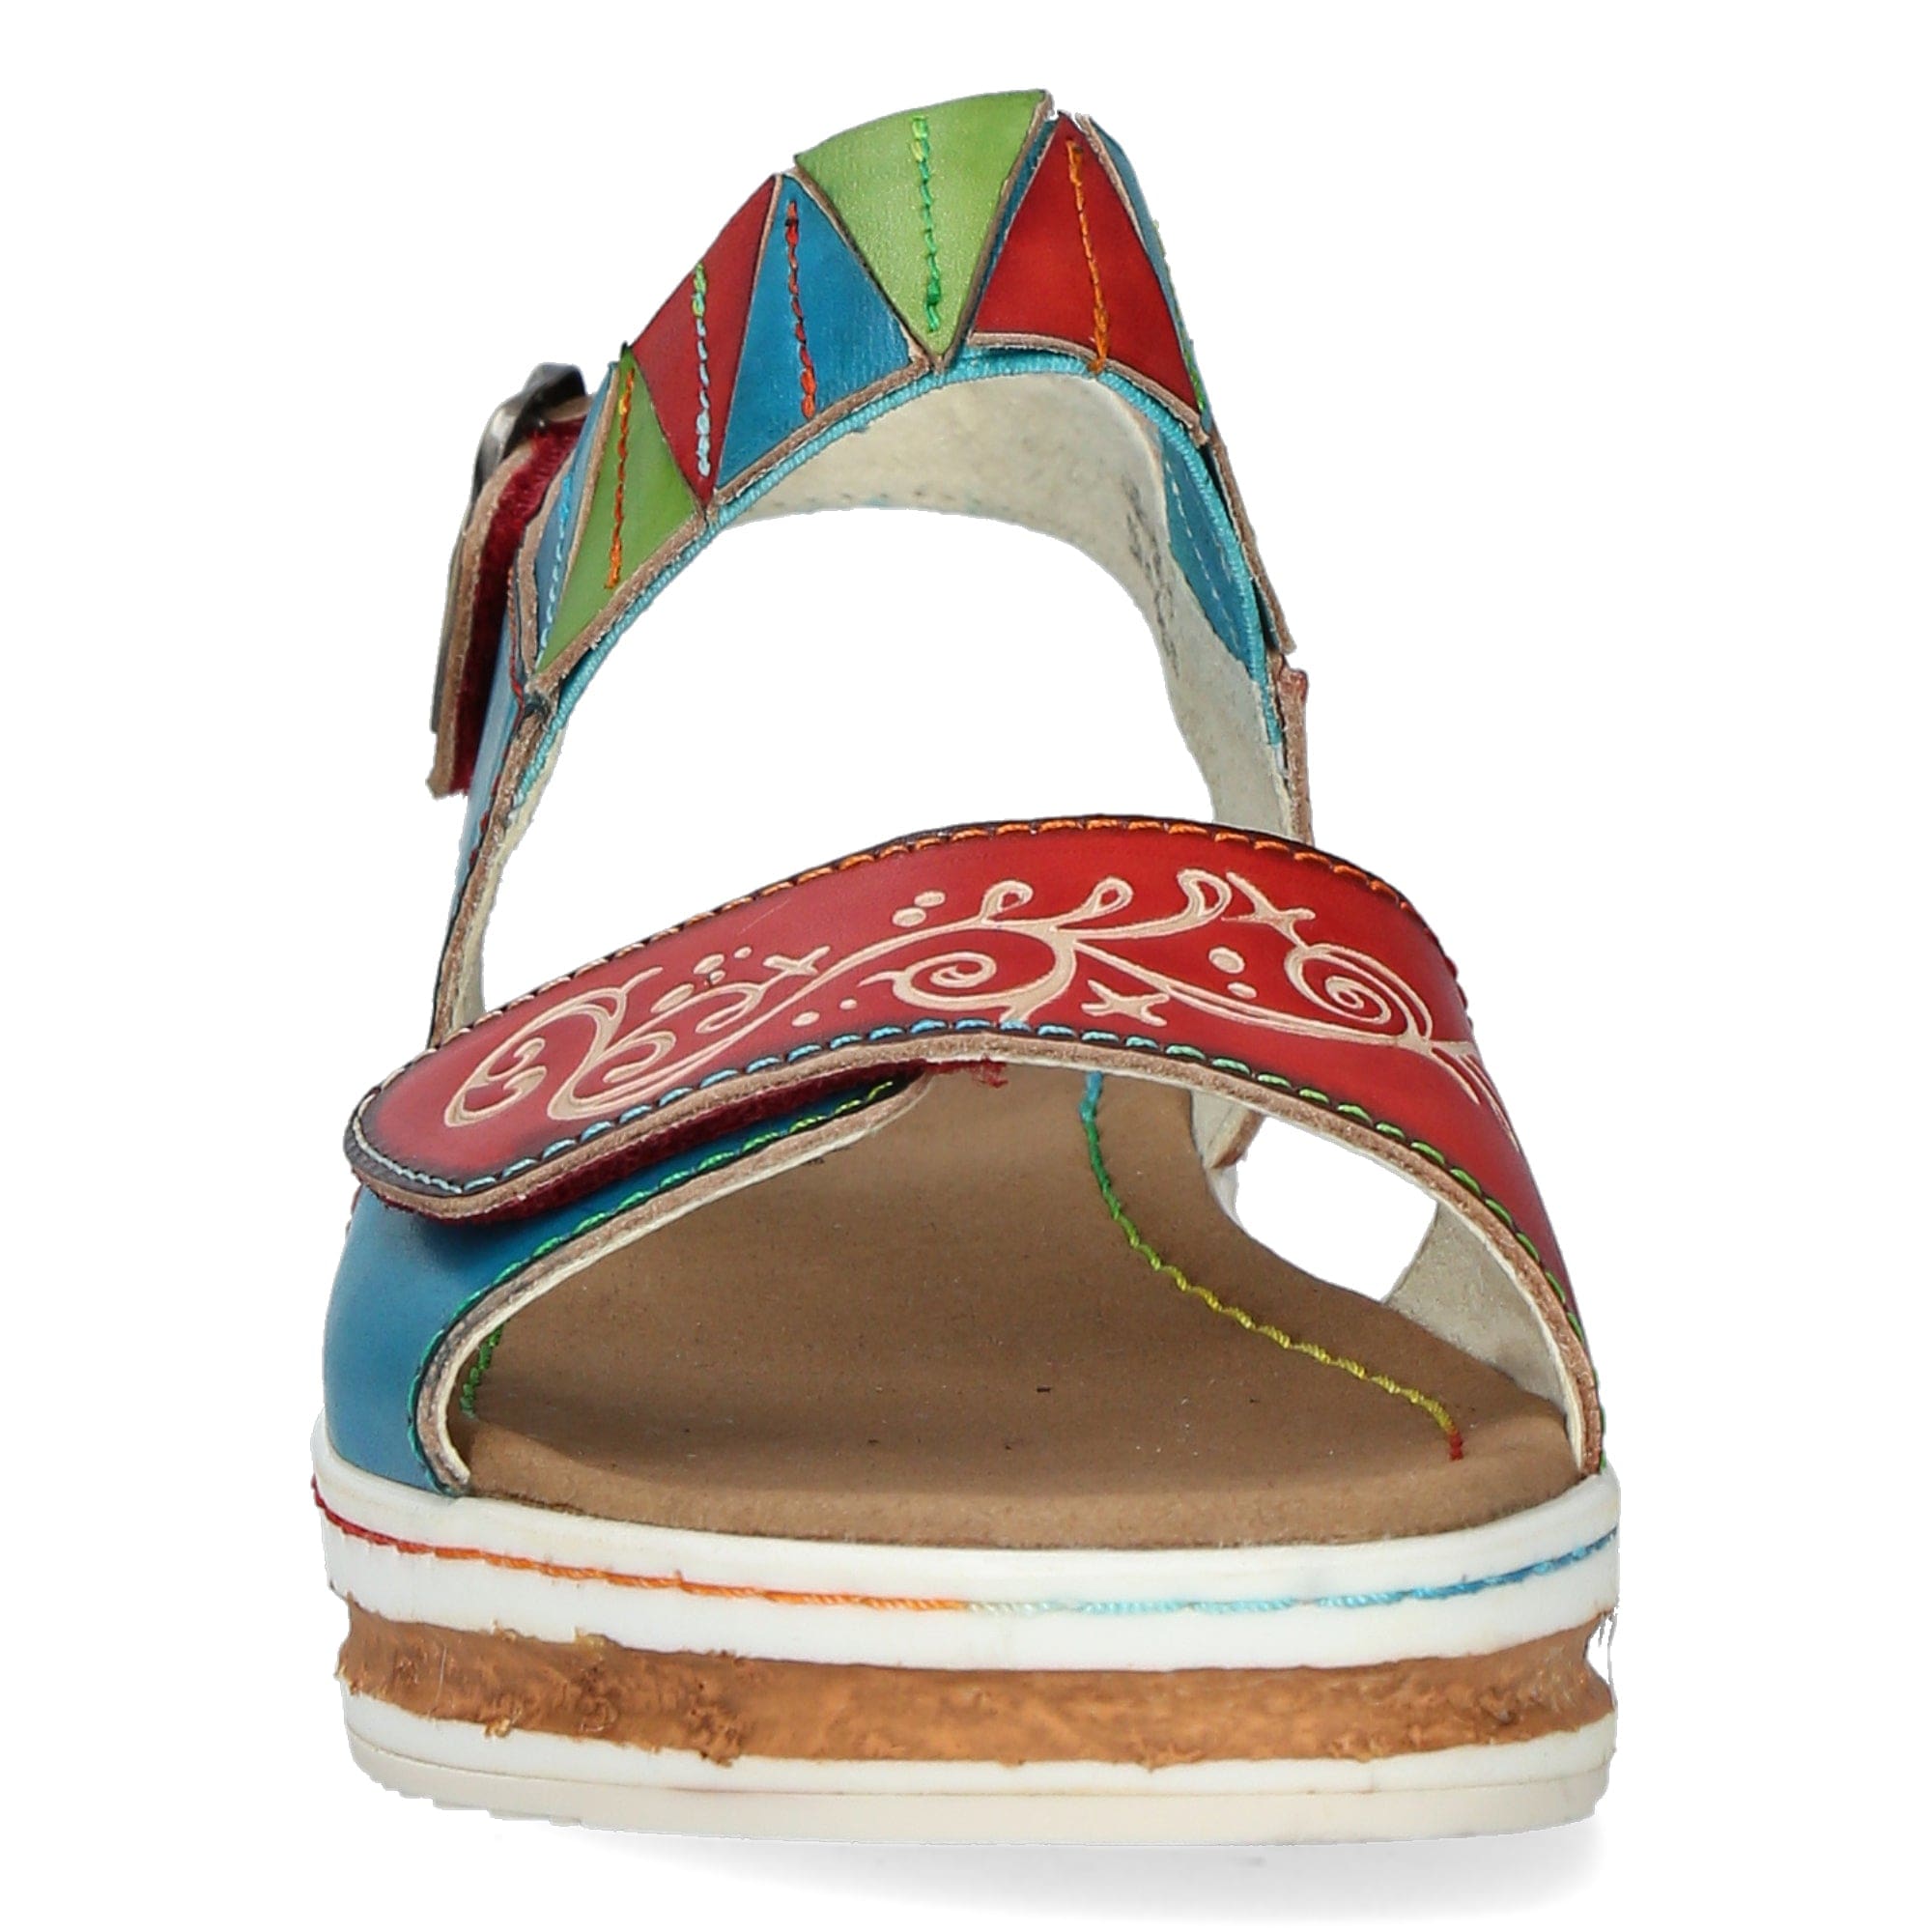 Schuh DICEZEO 05 - Sandale